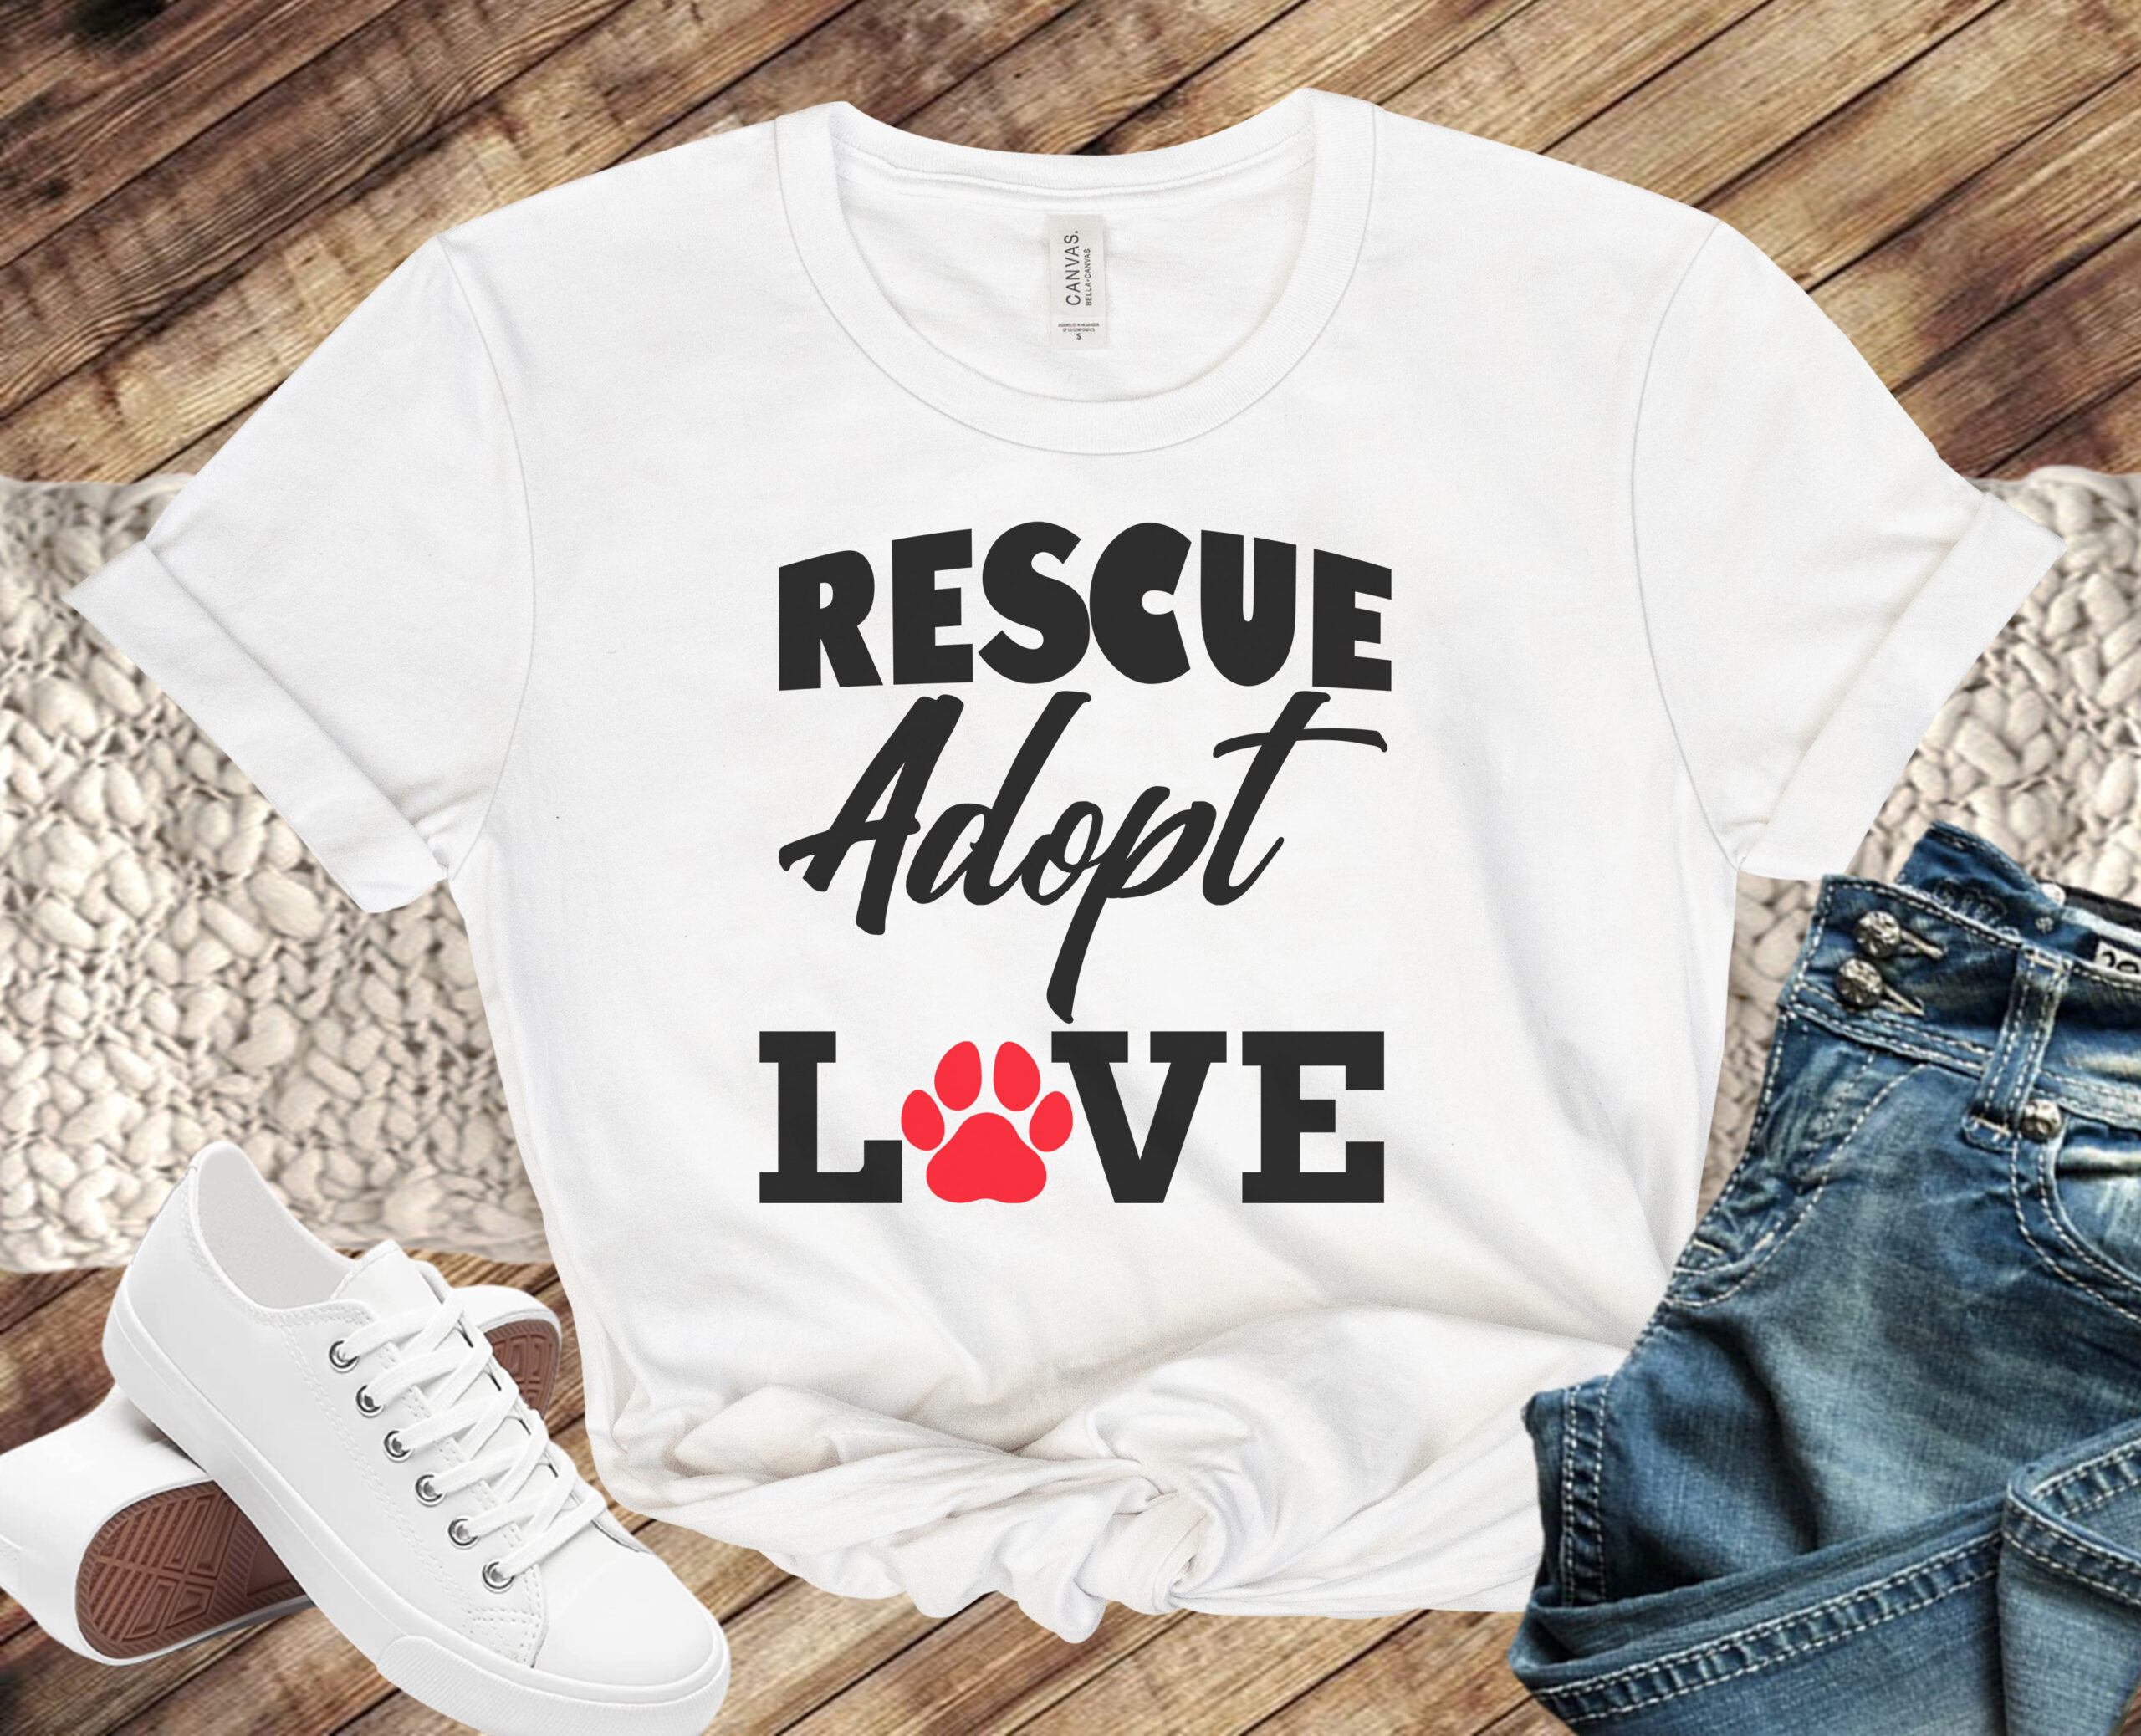 Free Rescue Adopt LOVE SVG Cutting File